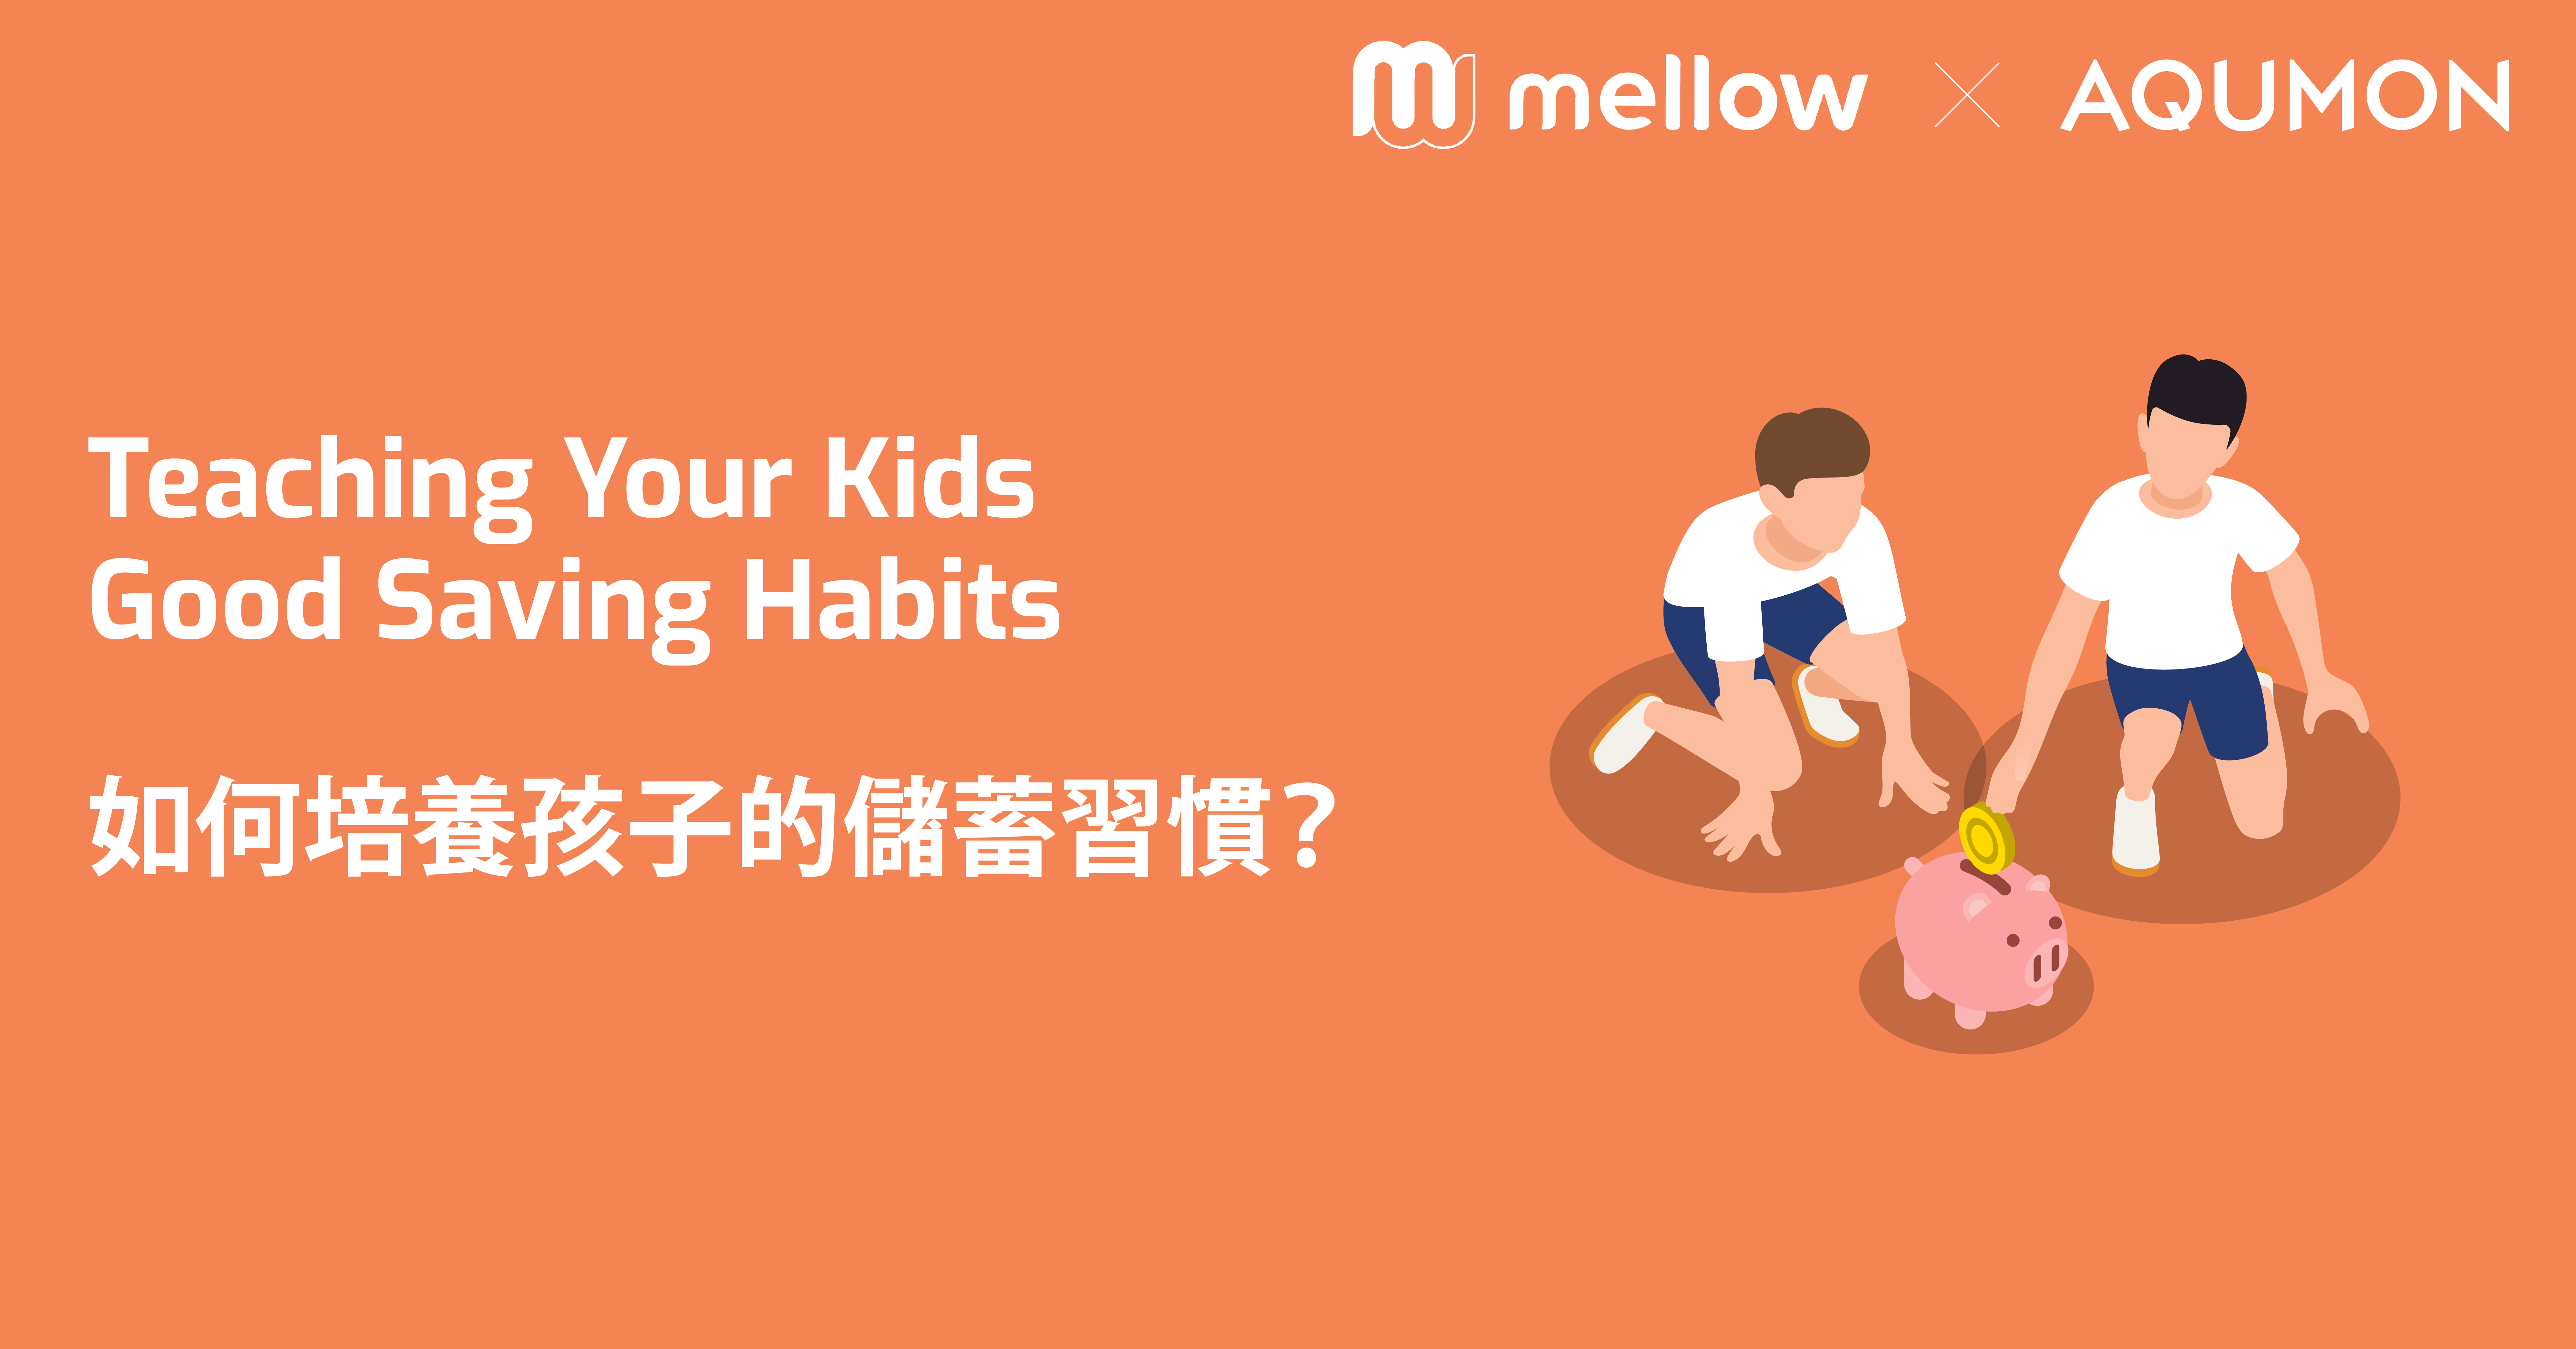 Teaching Your Kids Good Saving Habits